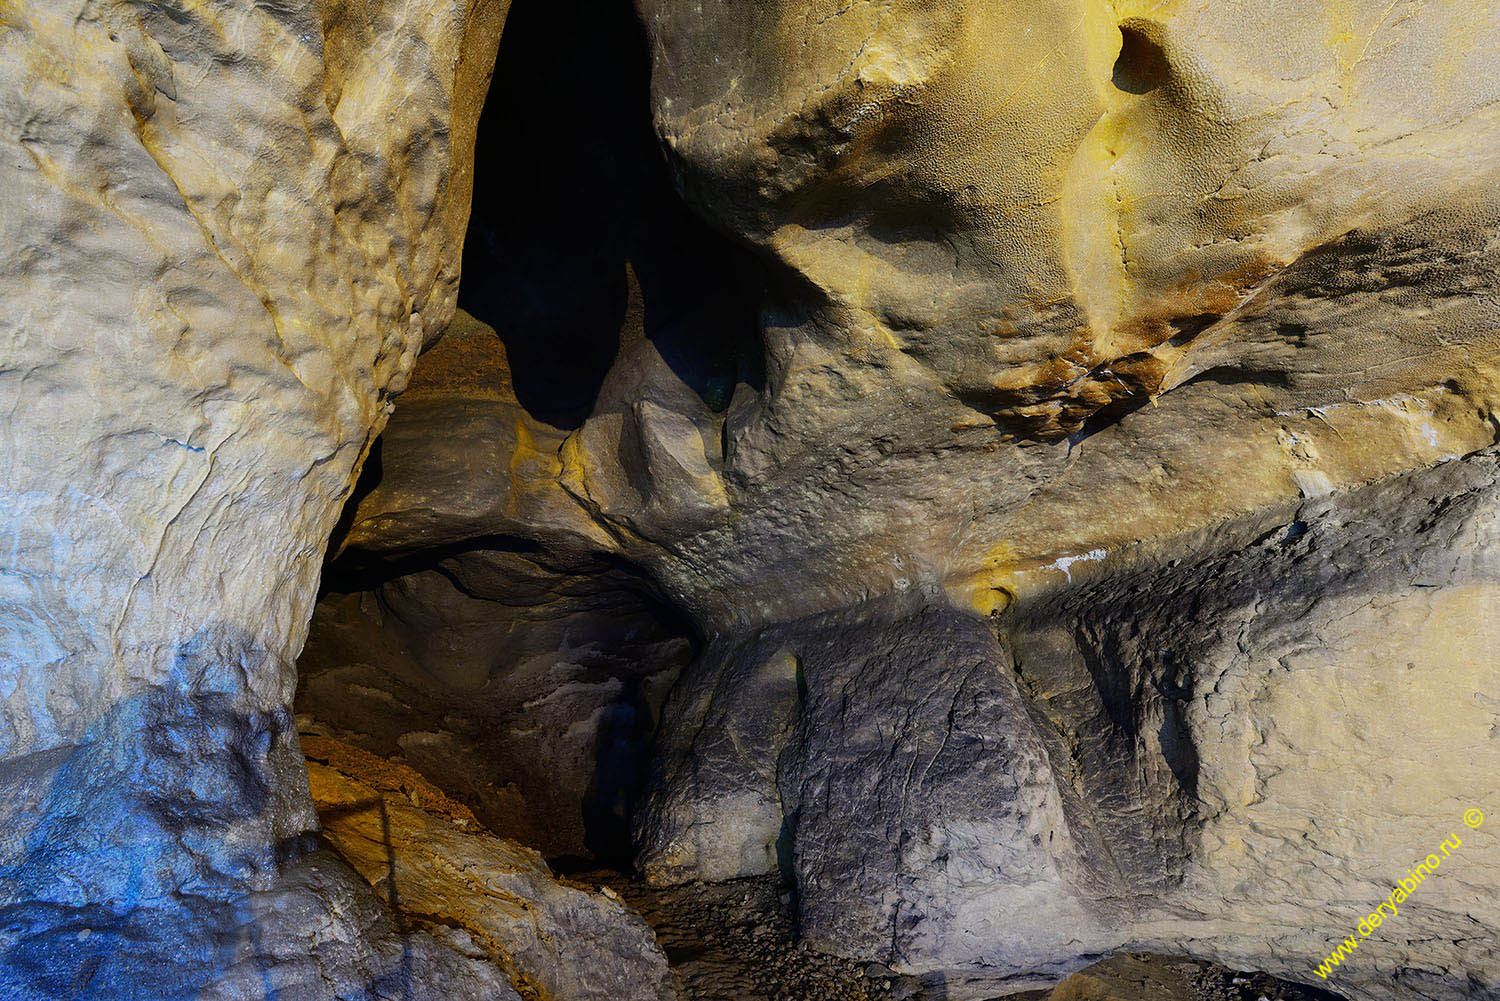 Пещера Бачо-Киро